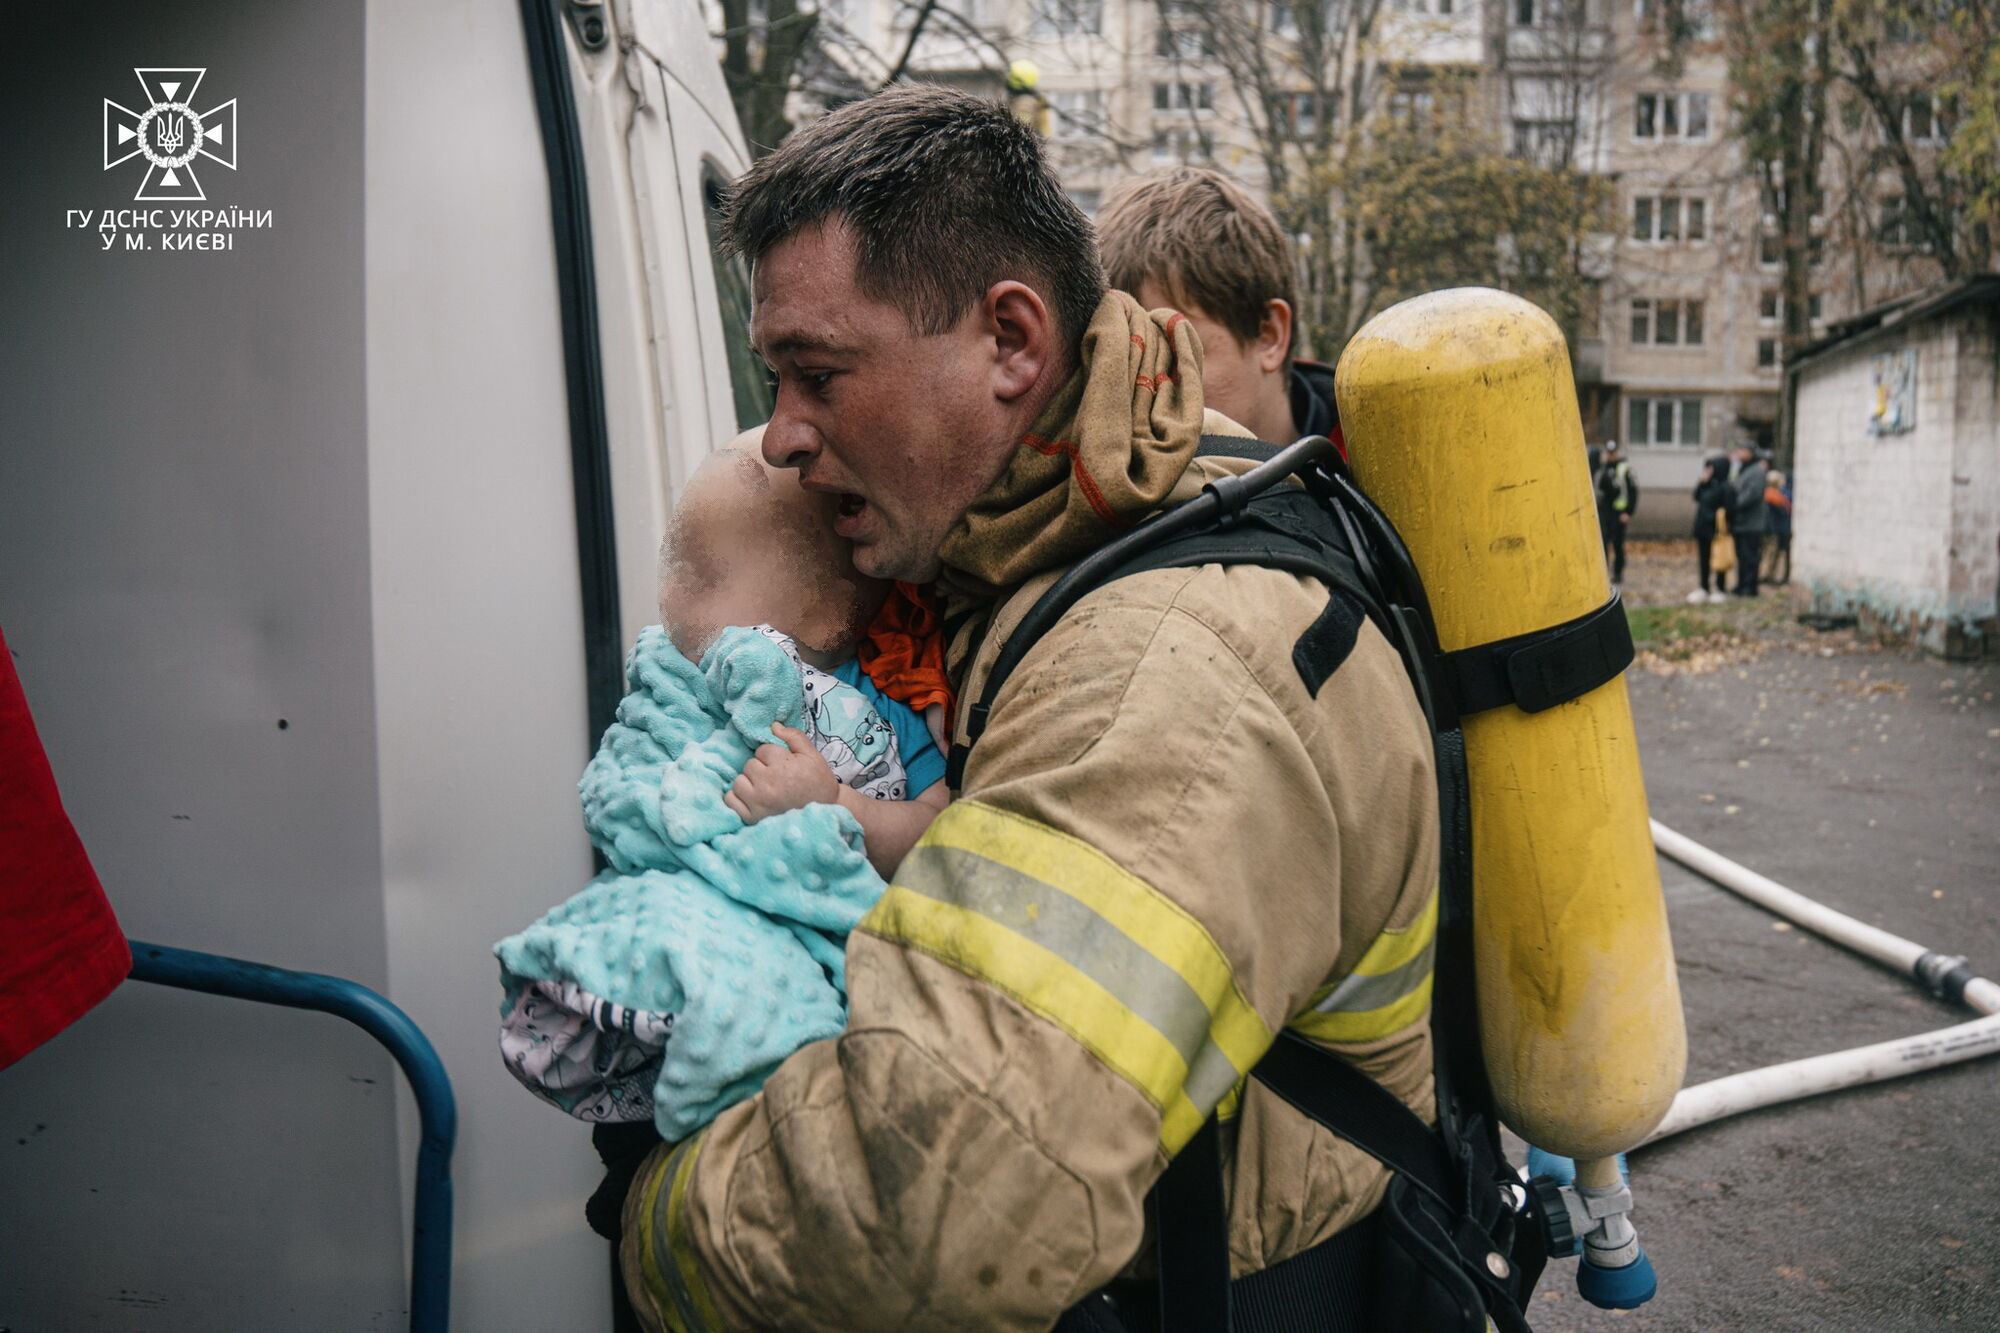 В Киеве во время пожара в квартире дома бойцы ГСЧС спасли младенца. Фото и видео